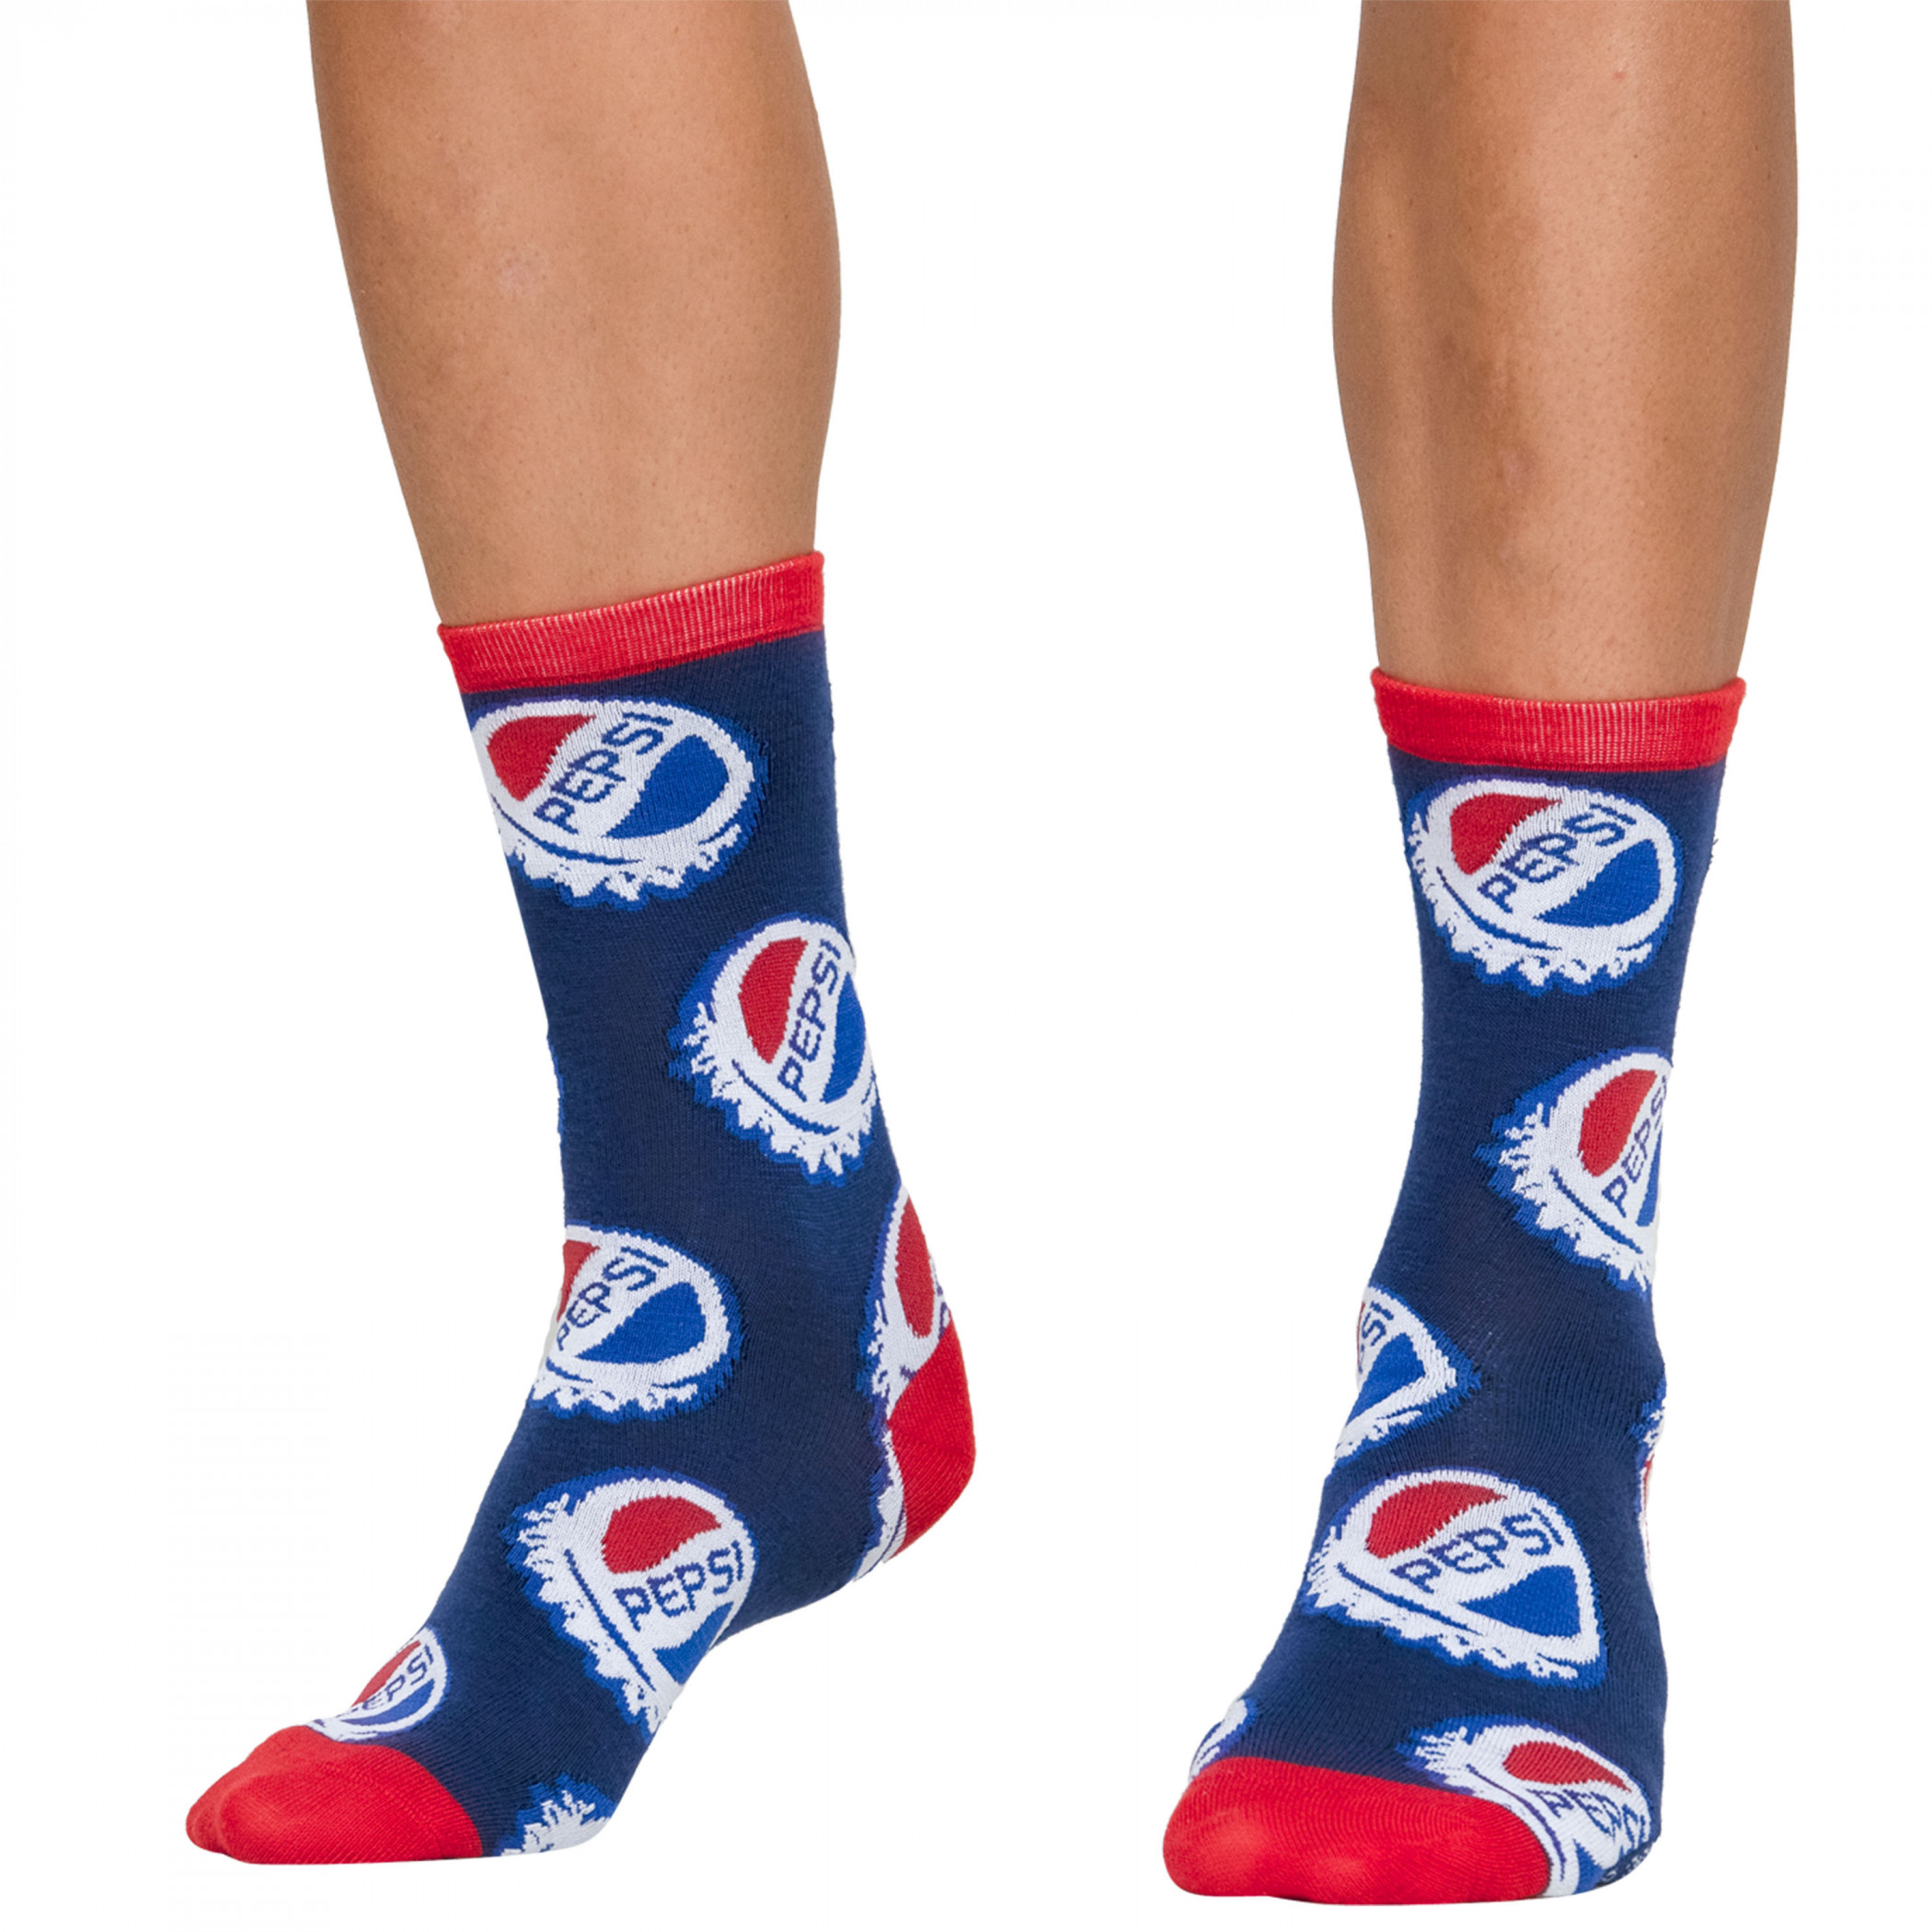 Pepsi Logos 3-Pack Crew Socks